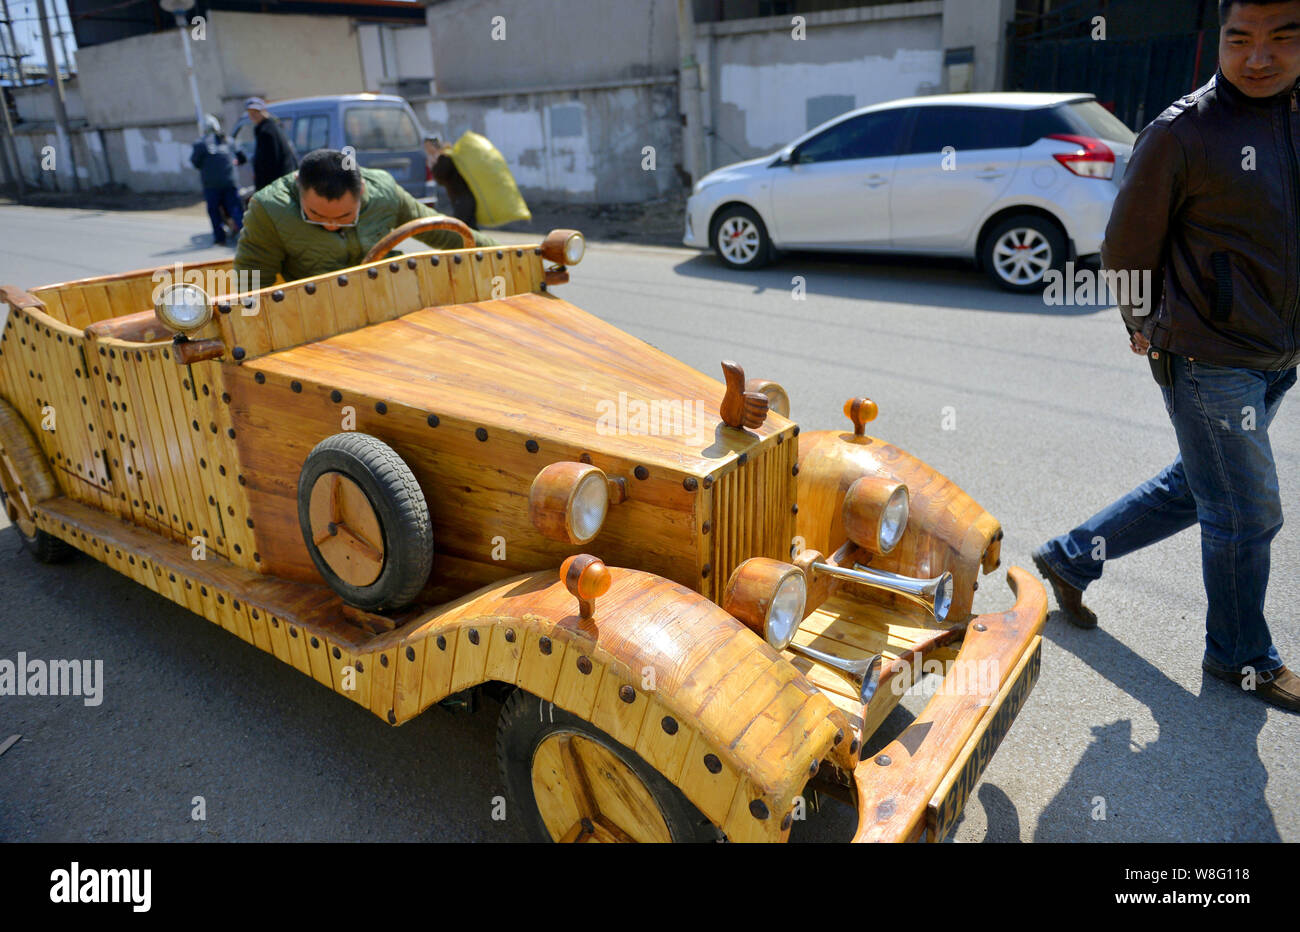 homemade wooden car